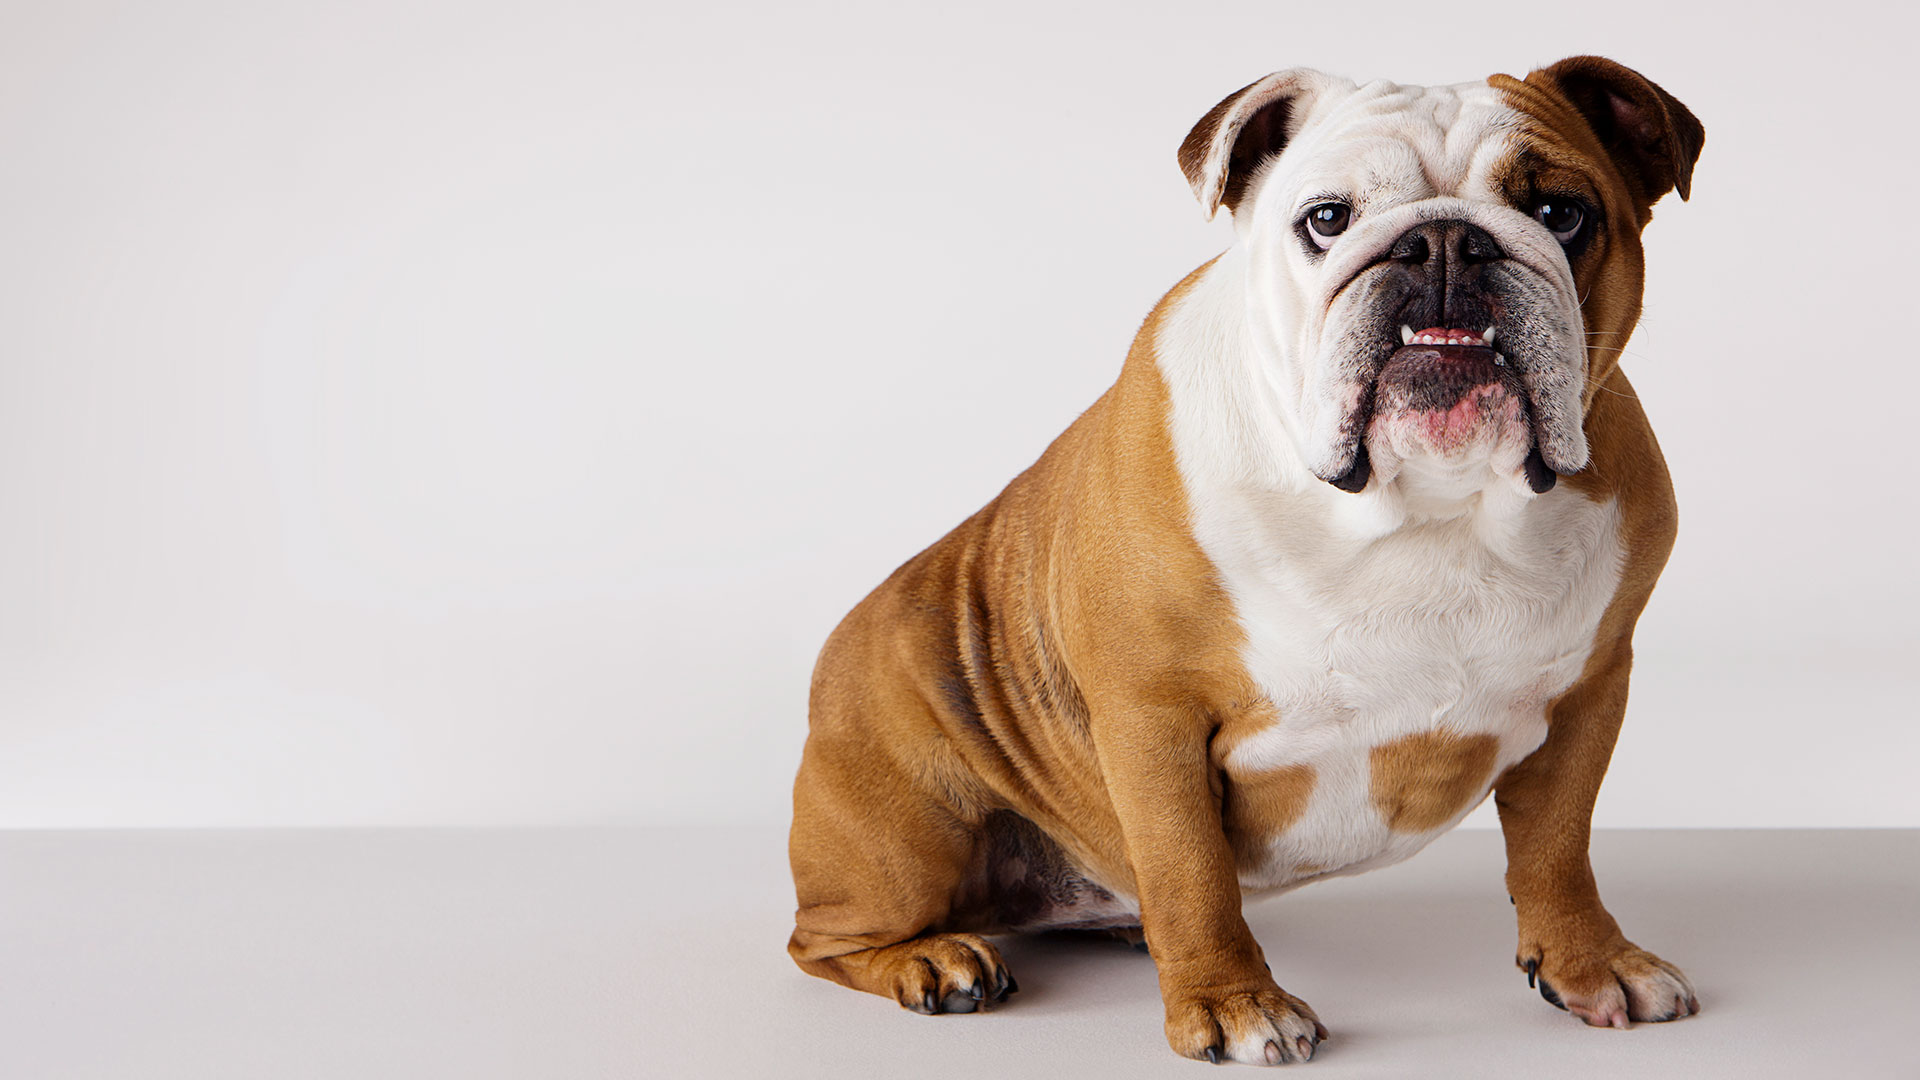 Bulldog inglés: Muchas de las características problemáticas de estas razas, como una cara muy plana, los pliegues faciales profundos y la respiración dificultosa y ruidosa, son percibidas por muchas personas como características deseables, lamentablemente  (Gettyimages)